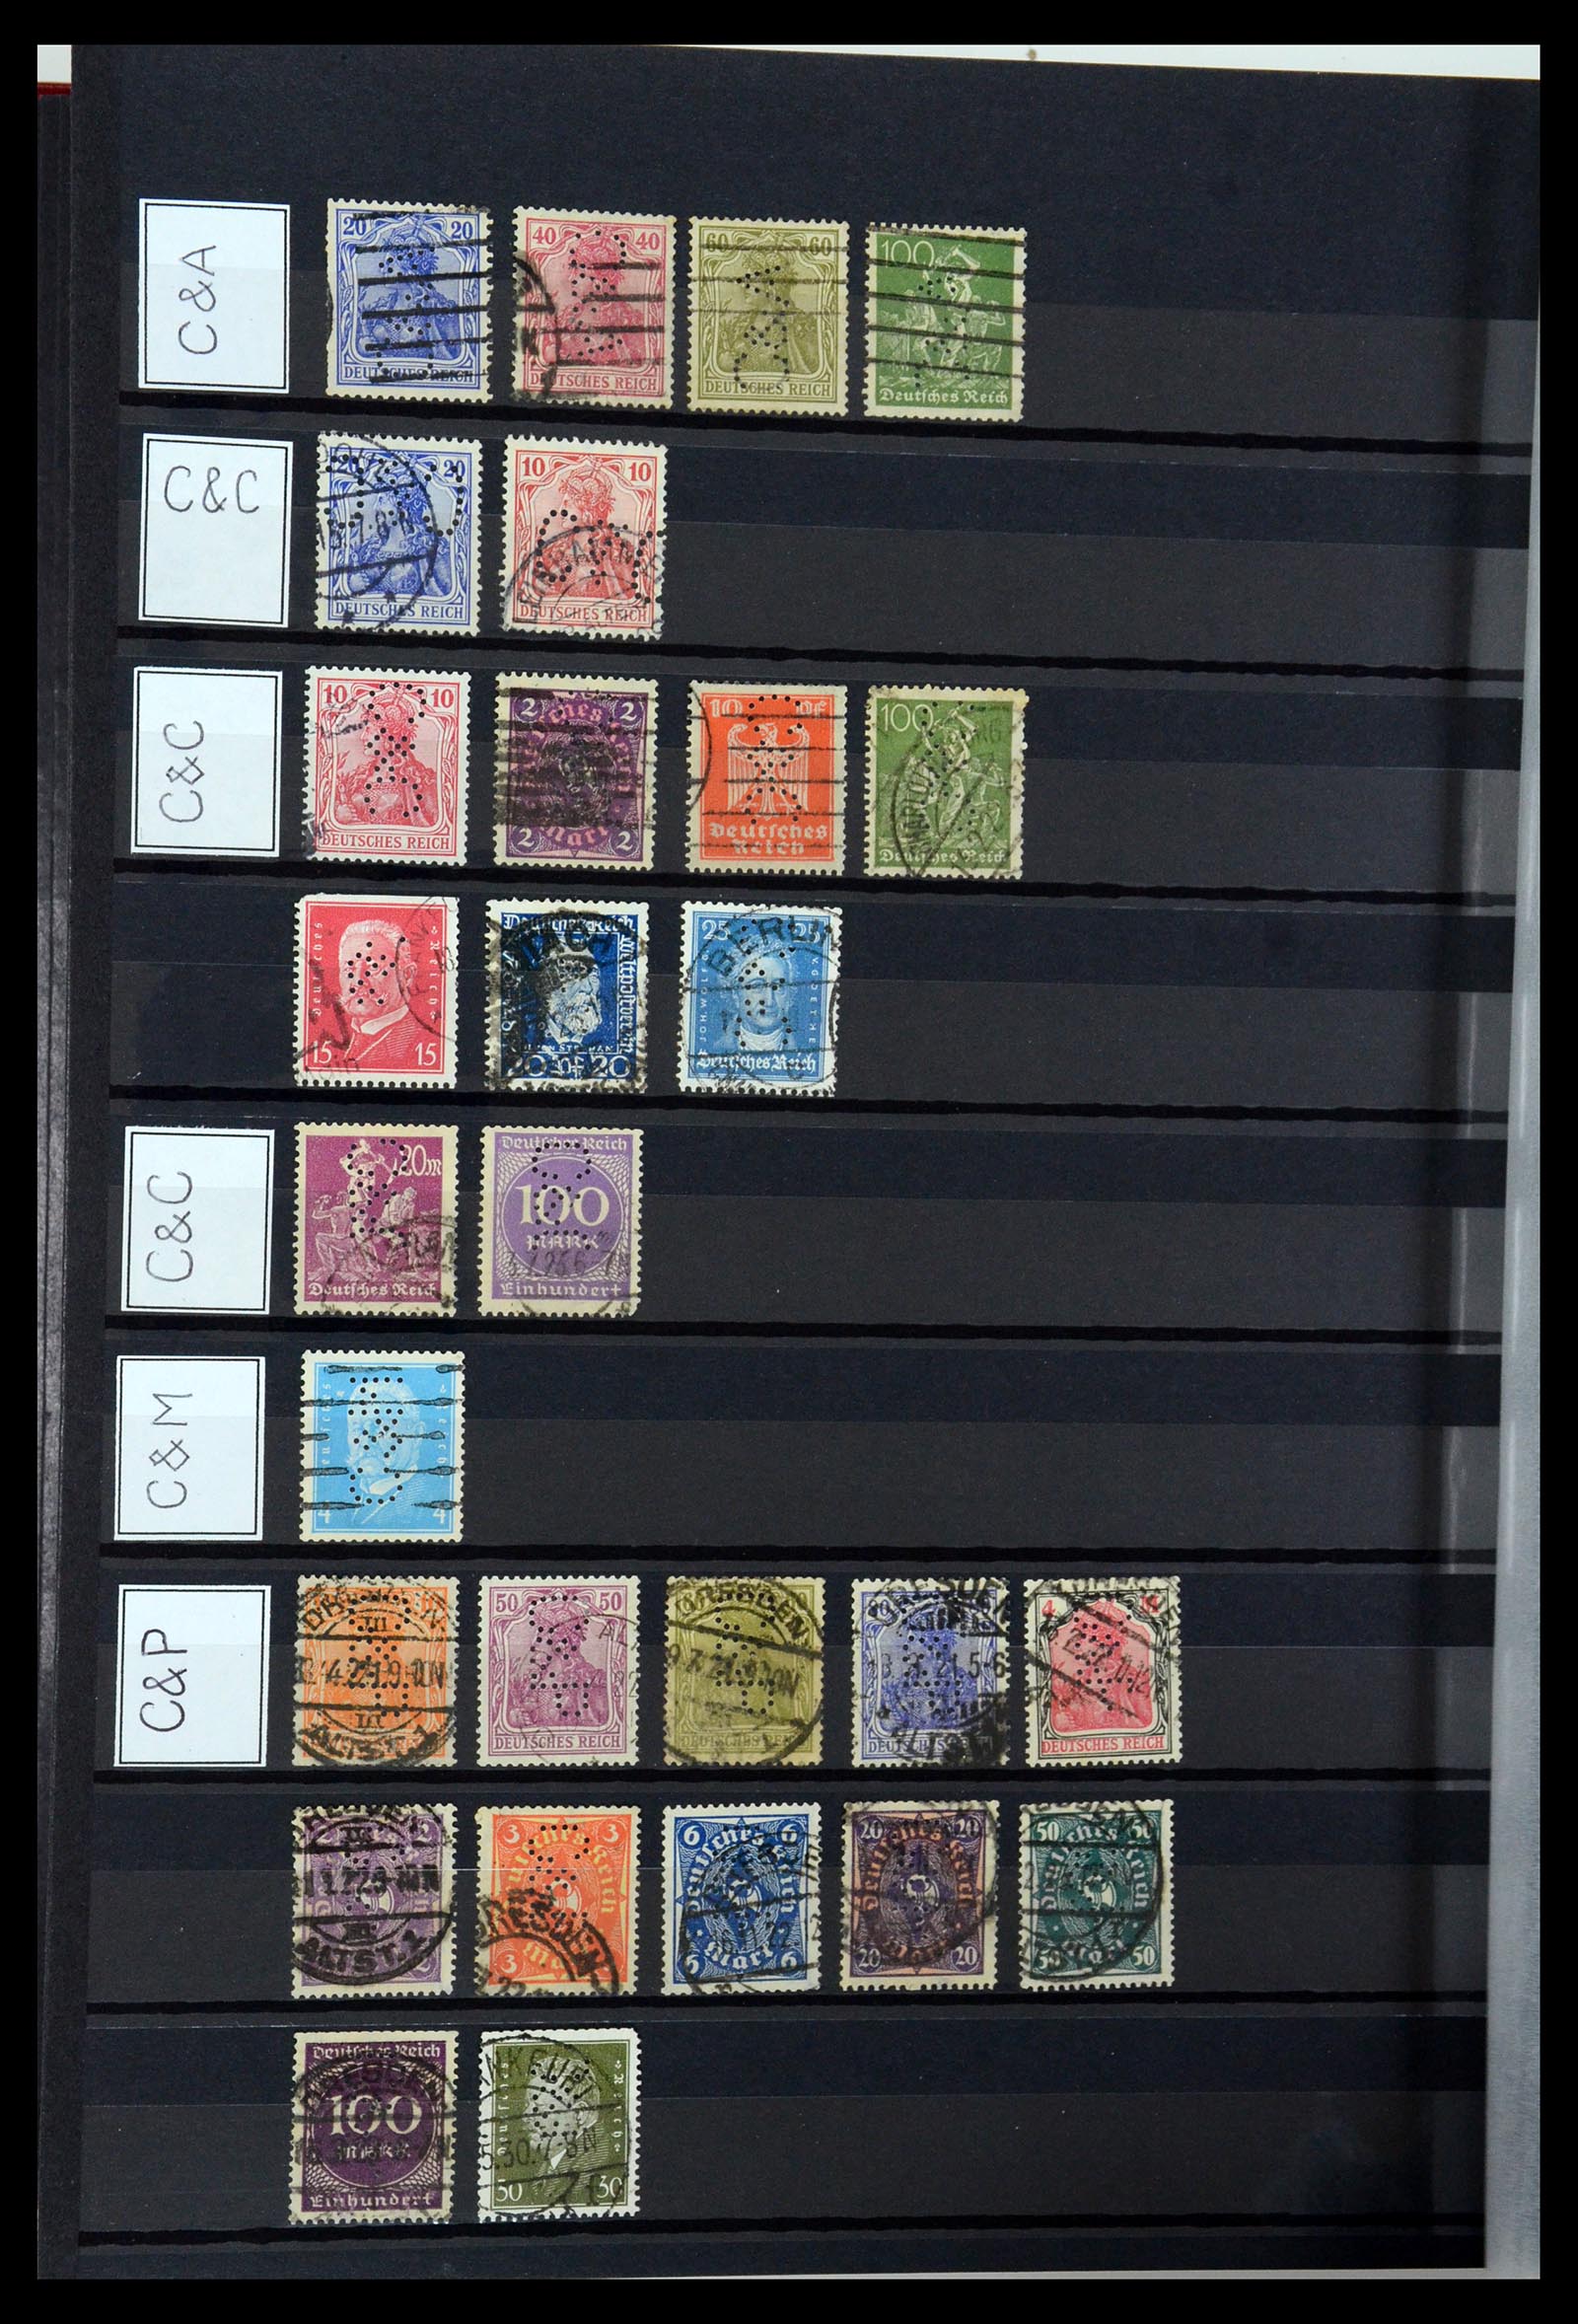 36405 088 - Stamp collection 36405 German Reich perfins 1880-1945.